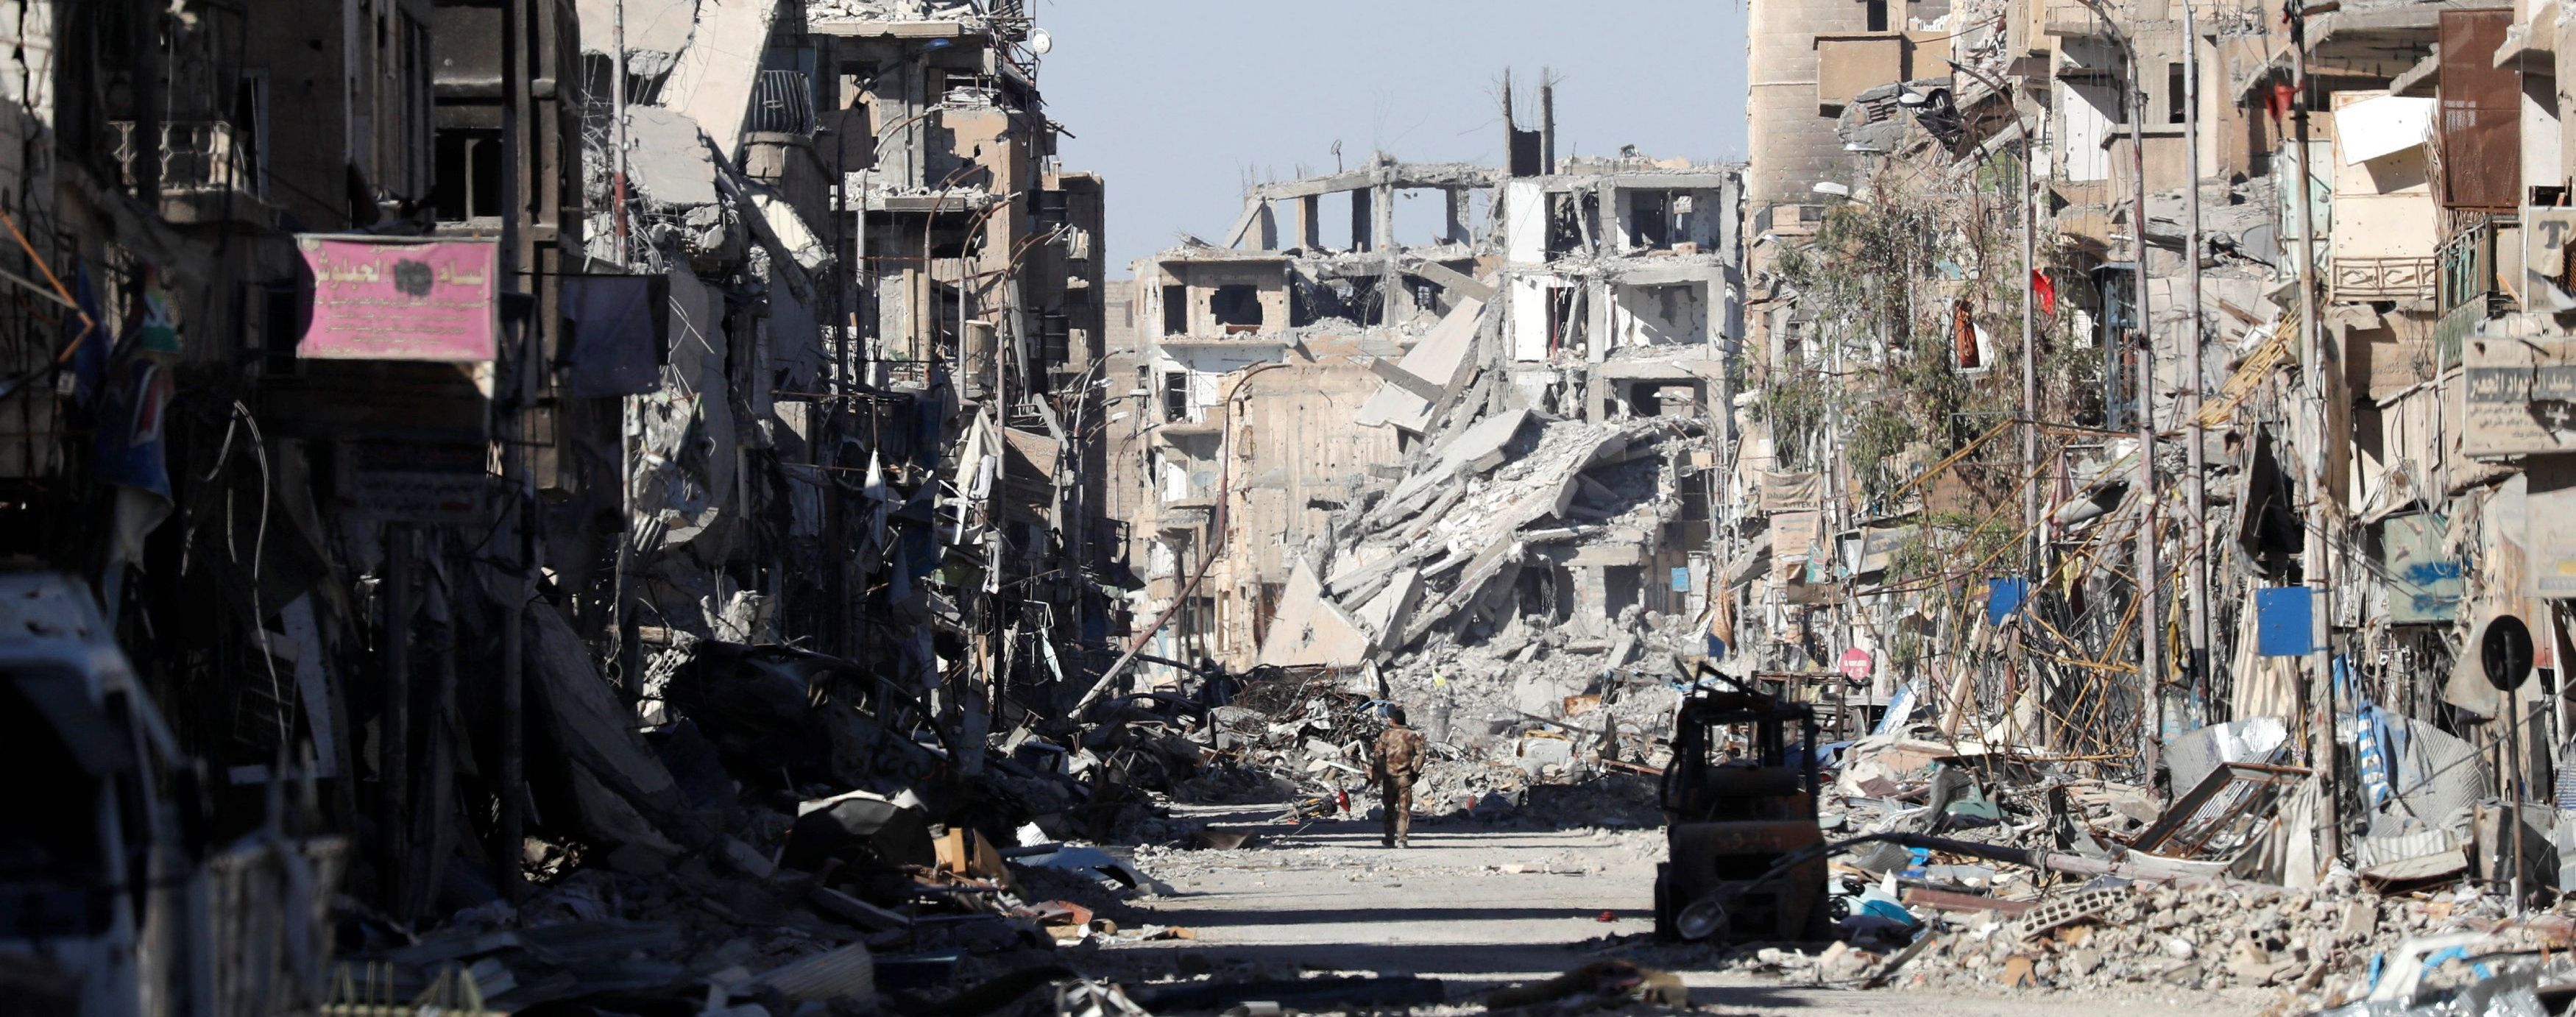 В Сирии армия нанесла удар, есть погибшие 